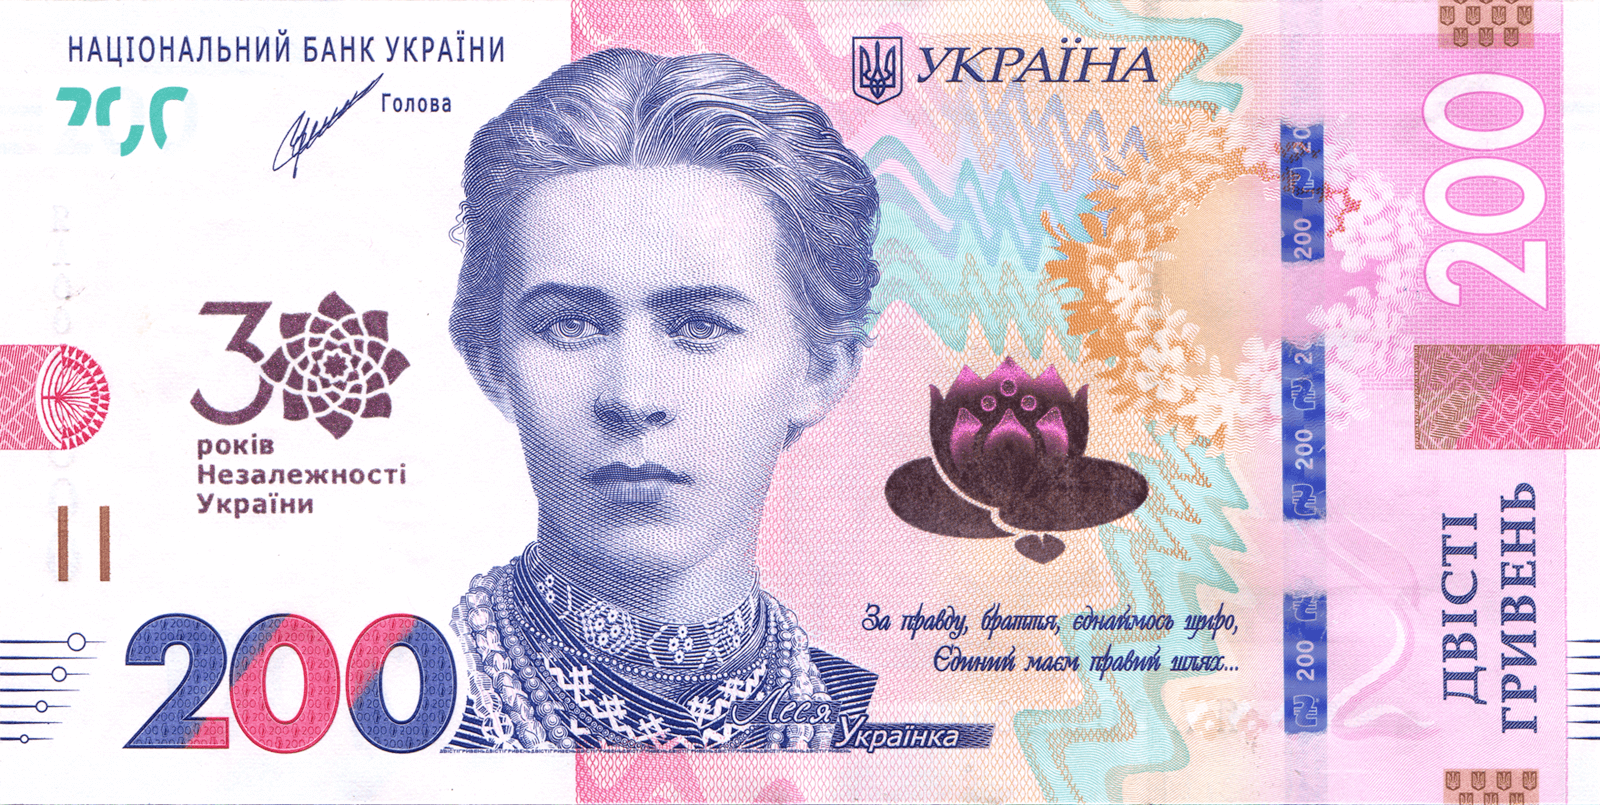 Пам`ятна банкнота номіналом 200 гривень зразка 2019 року до 30-річчя незалежності України (аверс)